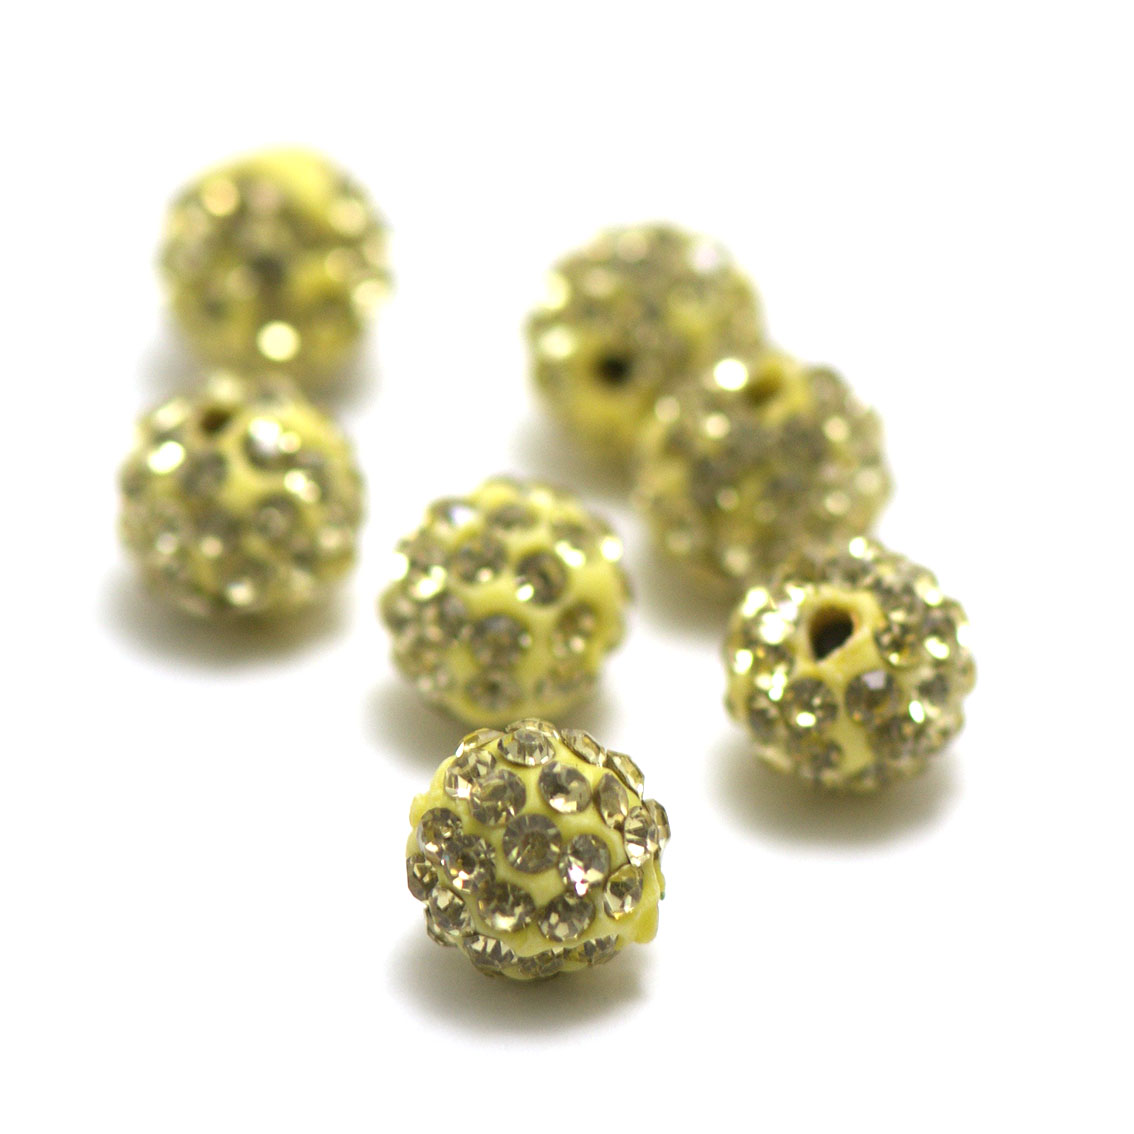 4 perles shamballa strass 10 mm,jaune clair